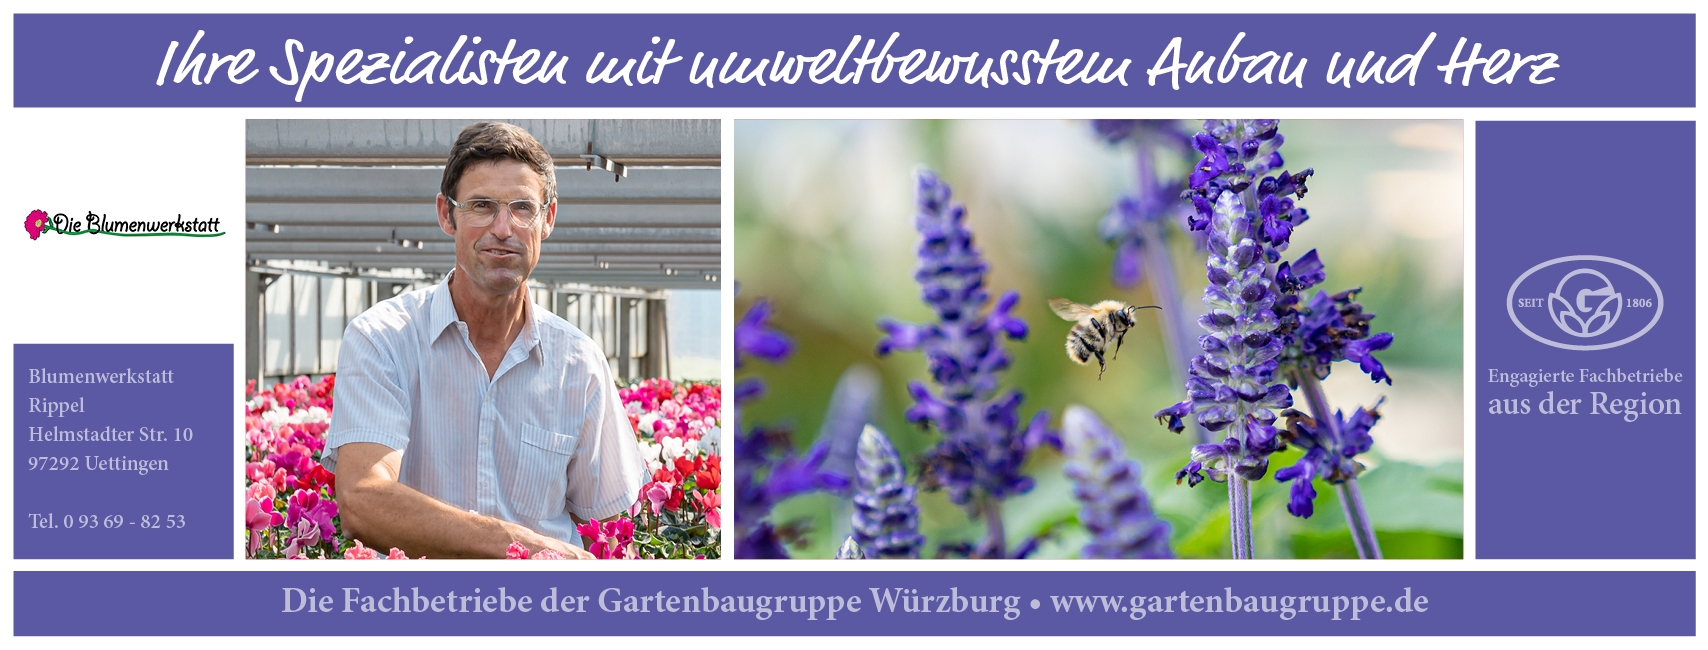 Die Blumenwerkstatt Rippel - Gartenbaugruppe Würzburg